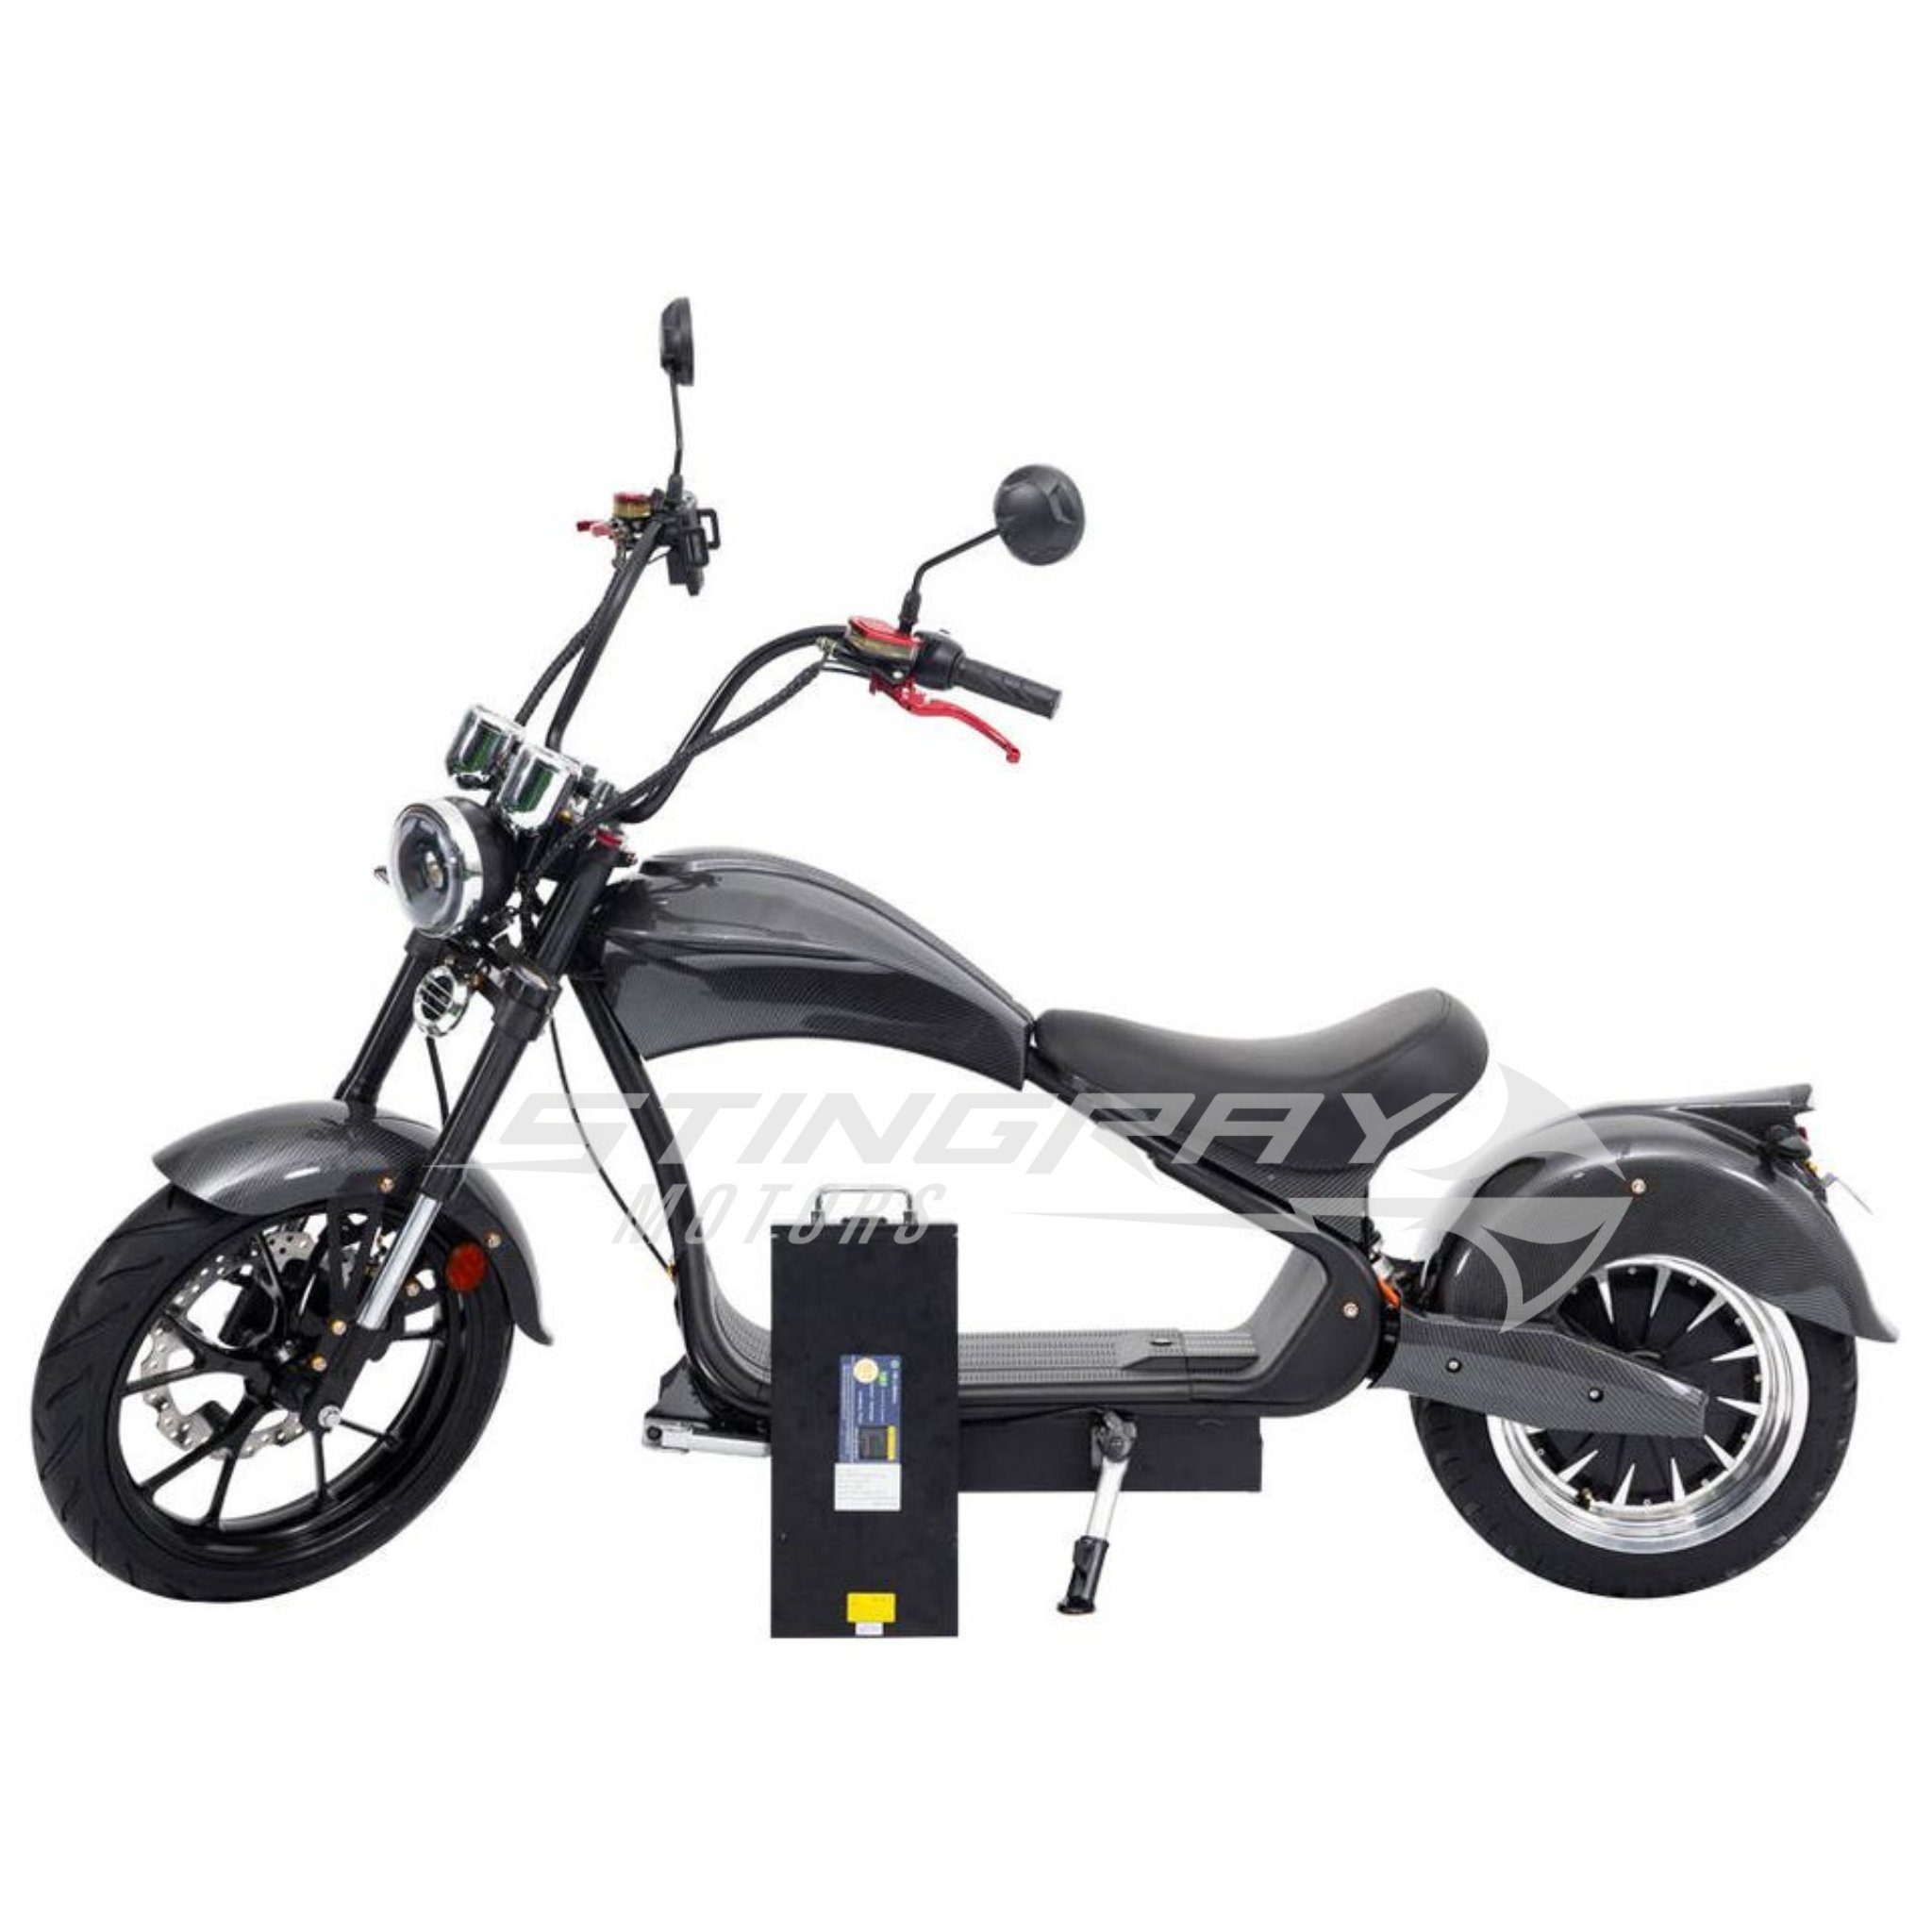 Stingray Motors E-Motorroller Elektroroller - 4500 E Roller km/h W, 4500,00 Chopper Harley 50 MH3, Blau Titan Watt - 50 - km/h